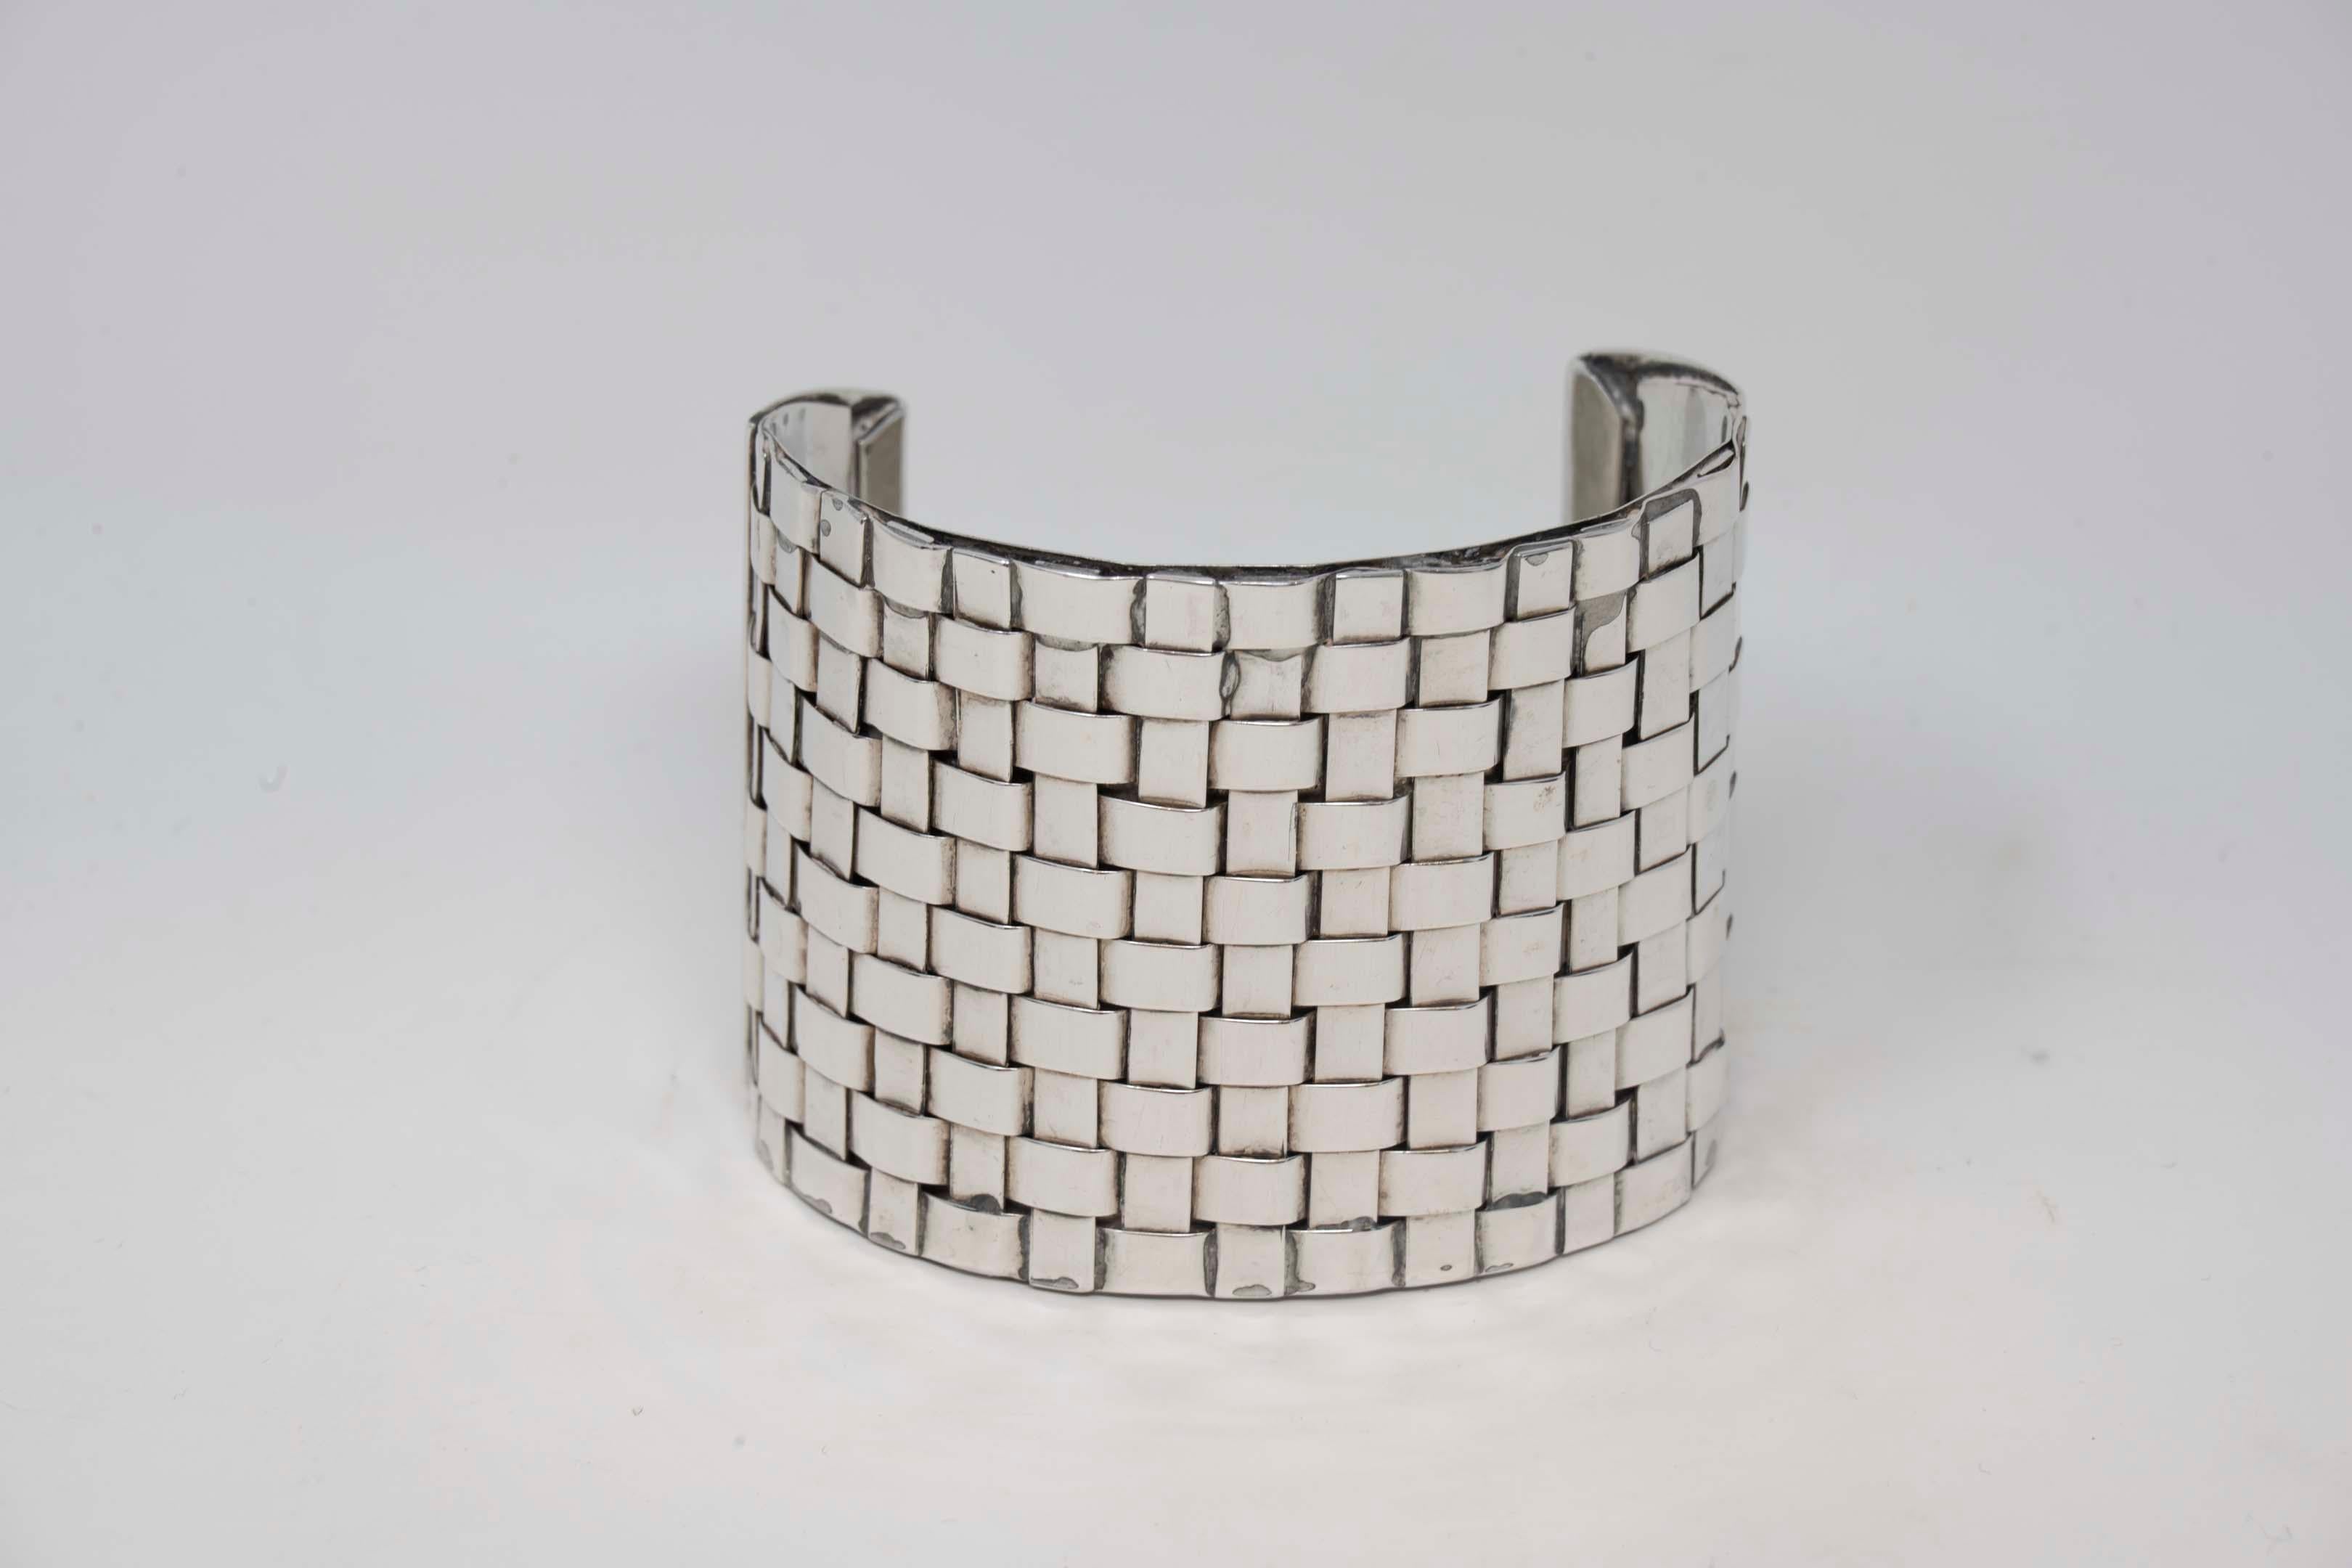 Manschettenarmband aus Sterlingsilber von Celia Sebiri, signiert Sebiri Sterling, bekannte New Yorker Designerin, tätig von 1970-1990. Armband misst 2 1/2 Zoll x 2 Zoll, aus Vorbesitz. Wiegt 86,6 Gramm, in gutem Zustand.
